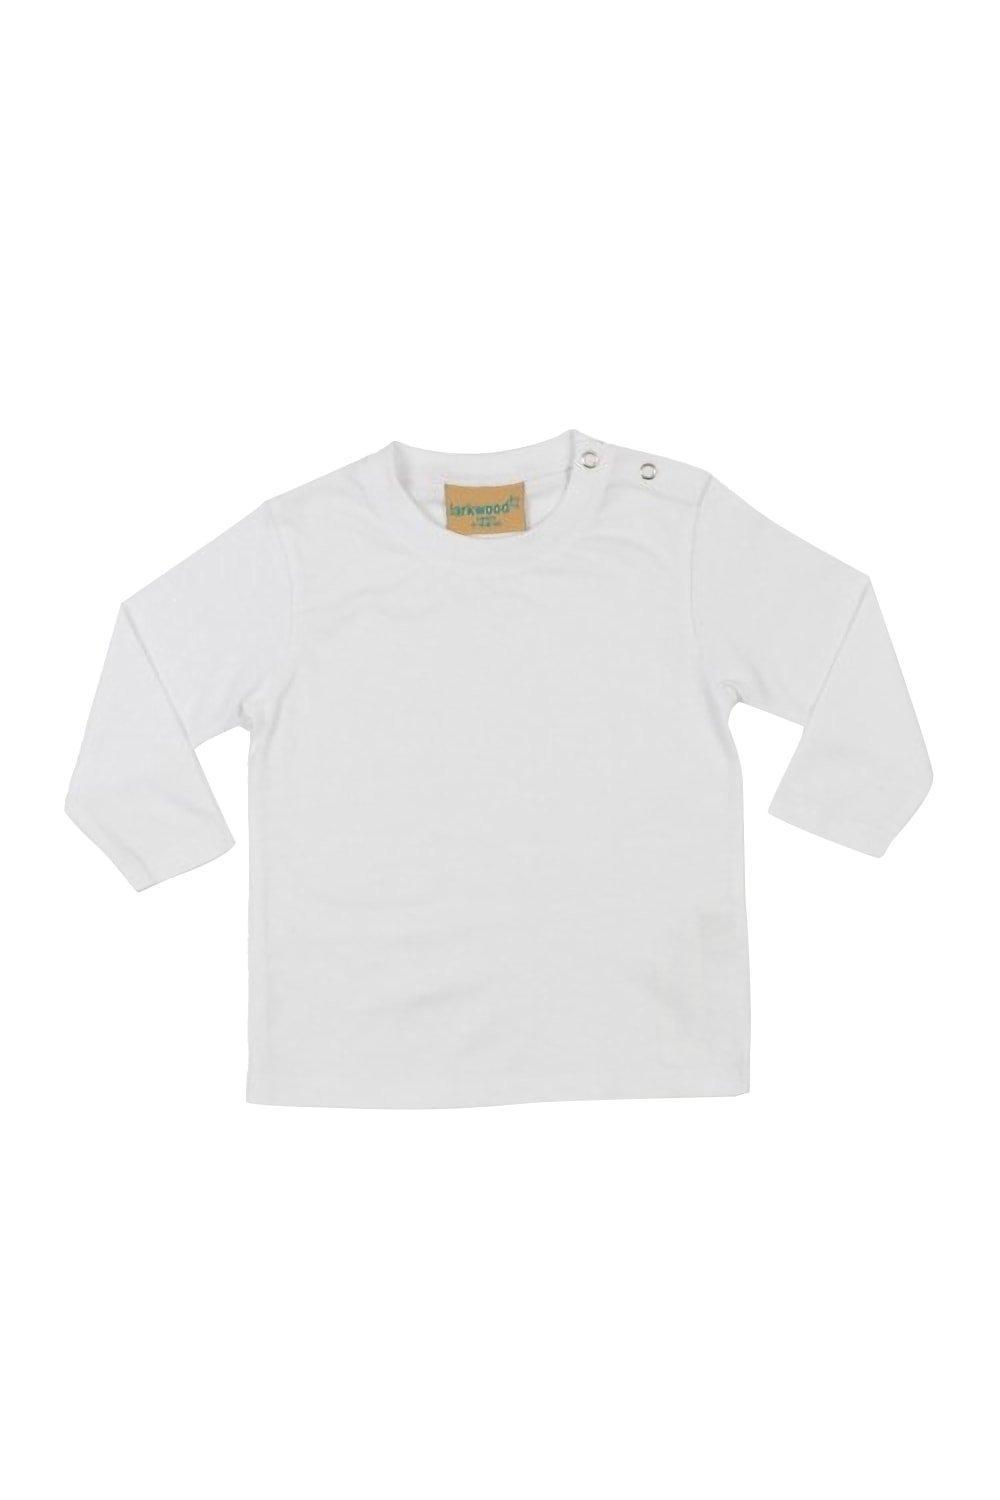 Простая футболка с длинным рукавом Larkwood, белый фотографии